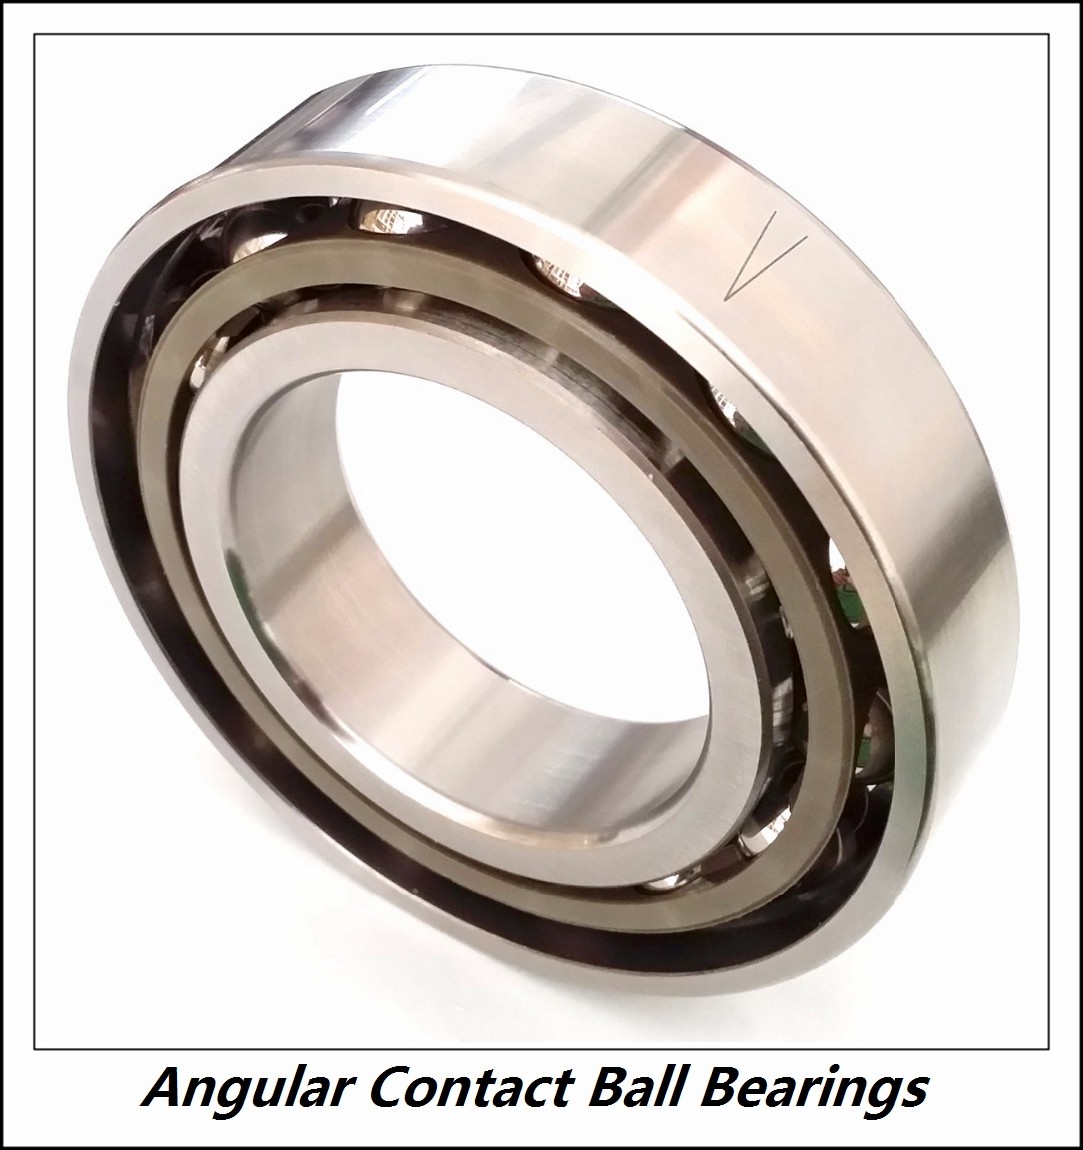 1.378 Inch | 35 Millimeter x 3.15 Inch | 80 Millimeter x 1.374 Inch | 34.9 Millimeter  INA 3307  Angular Contact Ball Bearings